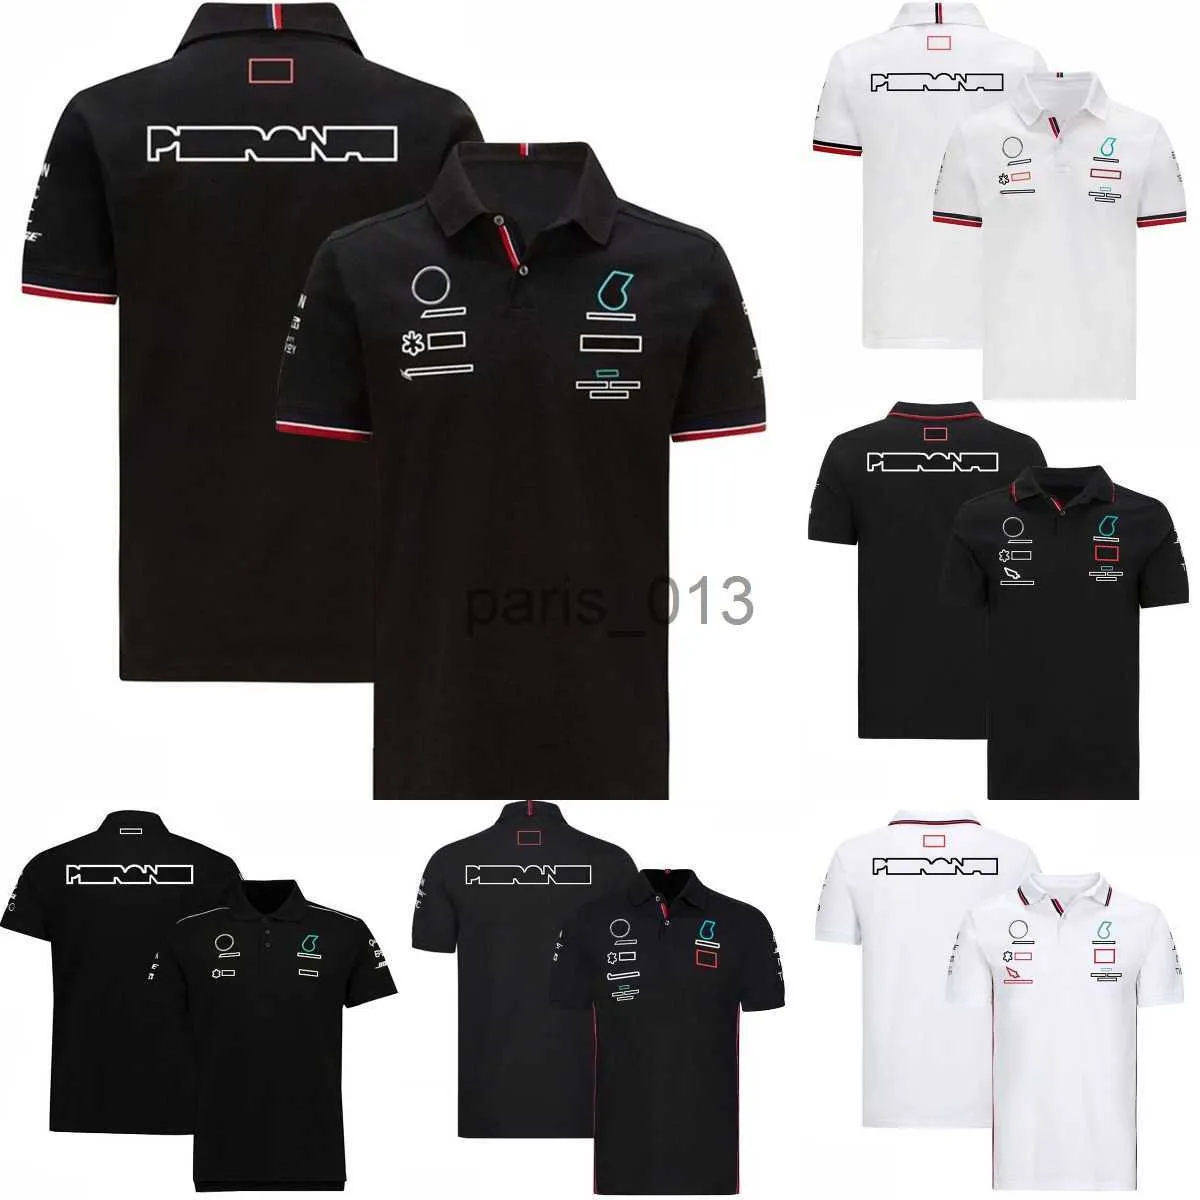 Autres vêtements ForMUla 1 T-shirt d'été F1 Chemises Team Uniform Racing Costume à manches courtes Plus Taille Racing Fans T-shirt Casual Sports Shirt x0912